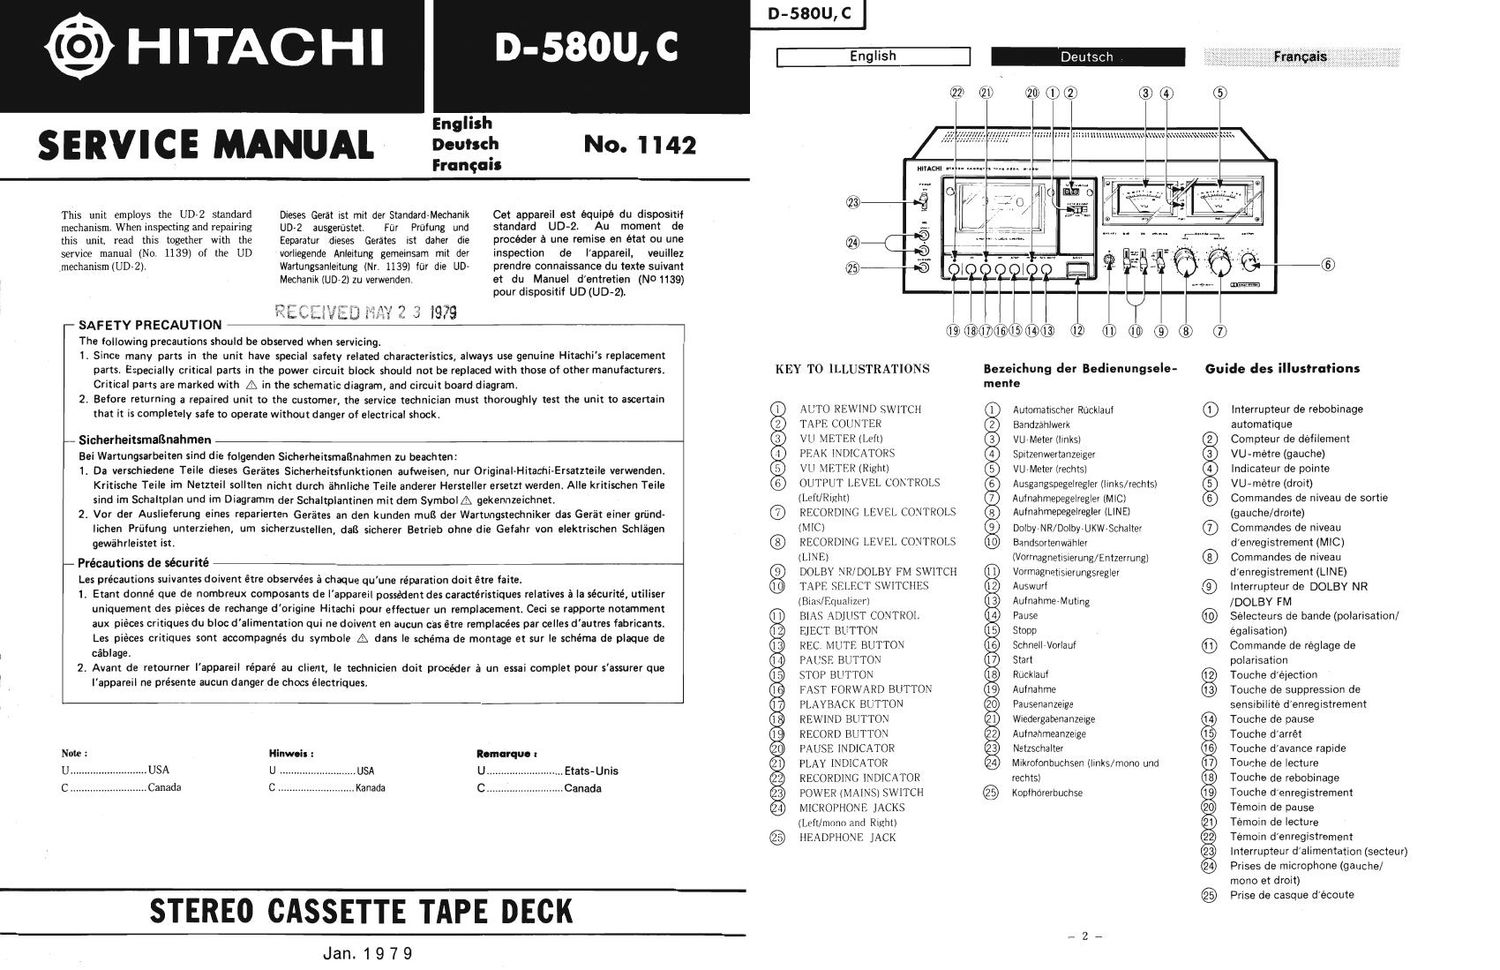 Hitachi D 580 U Service Manual